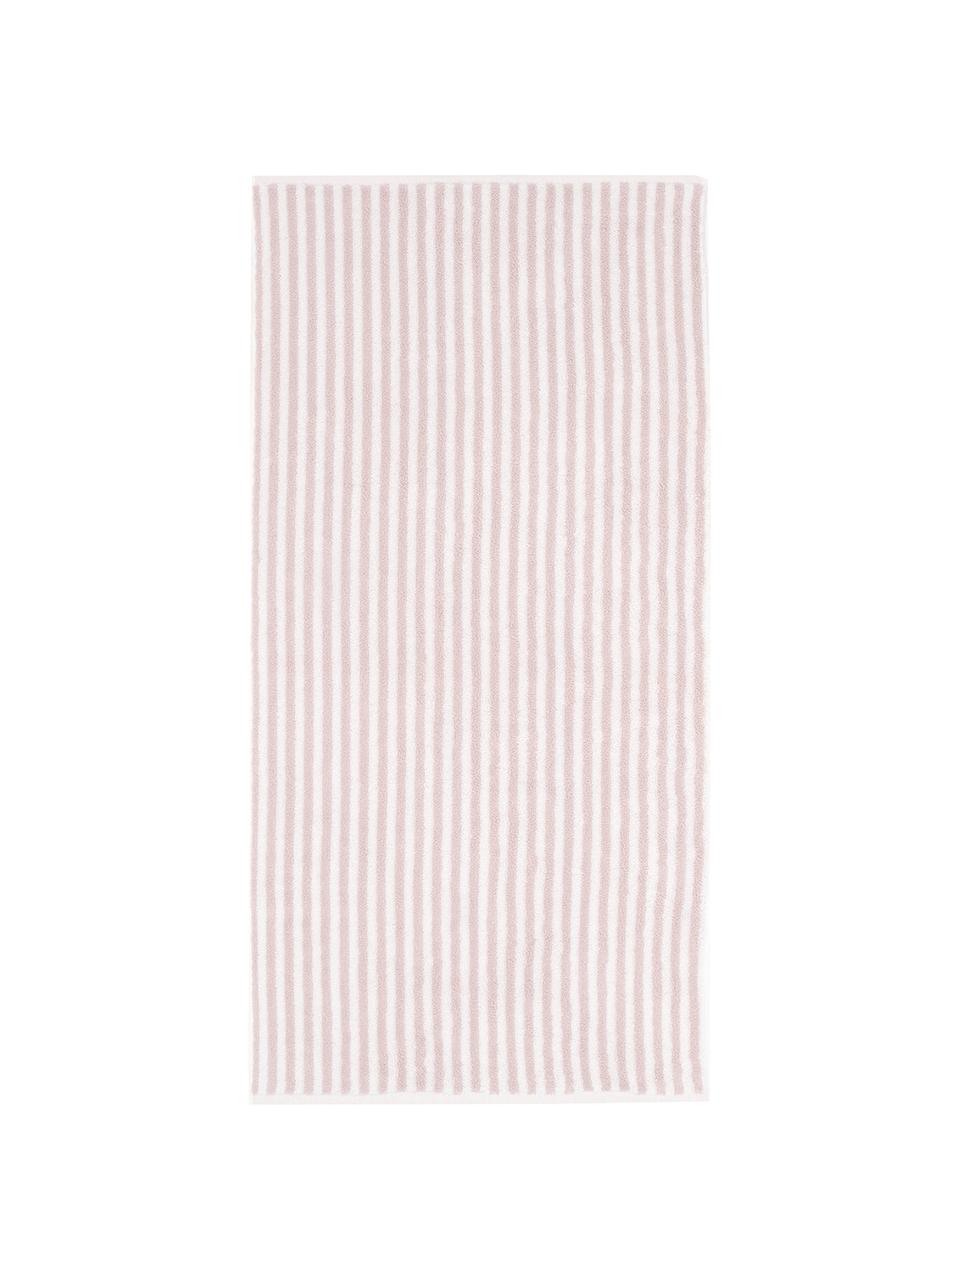 Ręcznik Viola, 2 szt., Blady różowy, kremowobiały, Ręcznik do rąk, S 50 x D 100 cm, 2 szt.